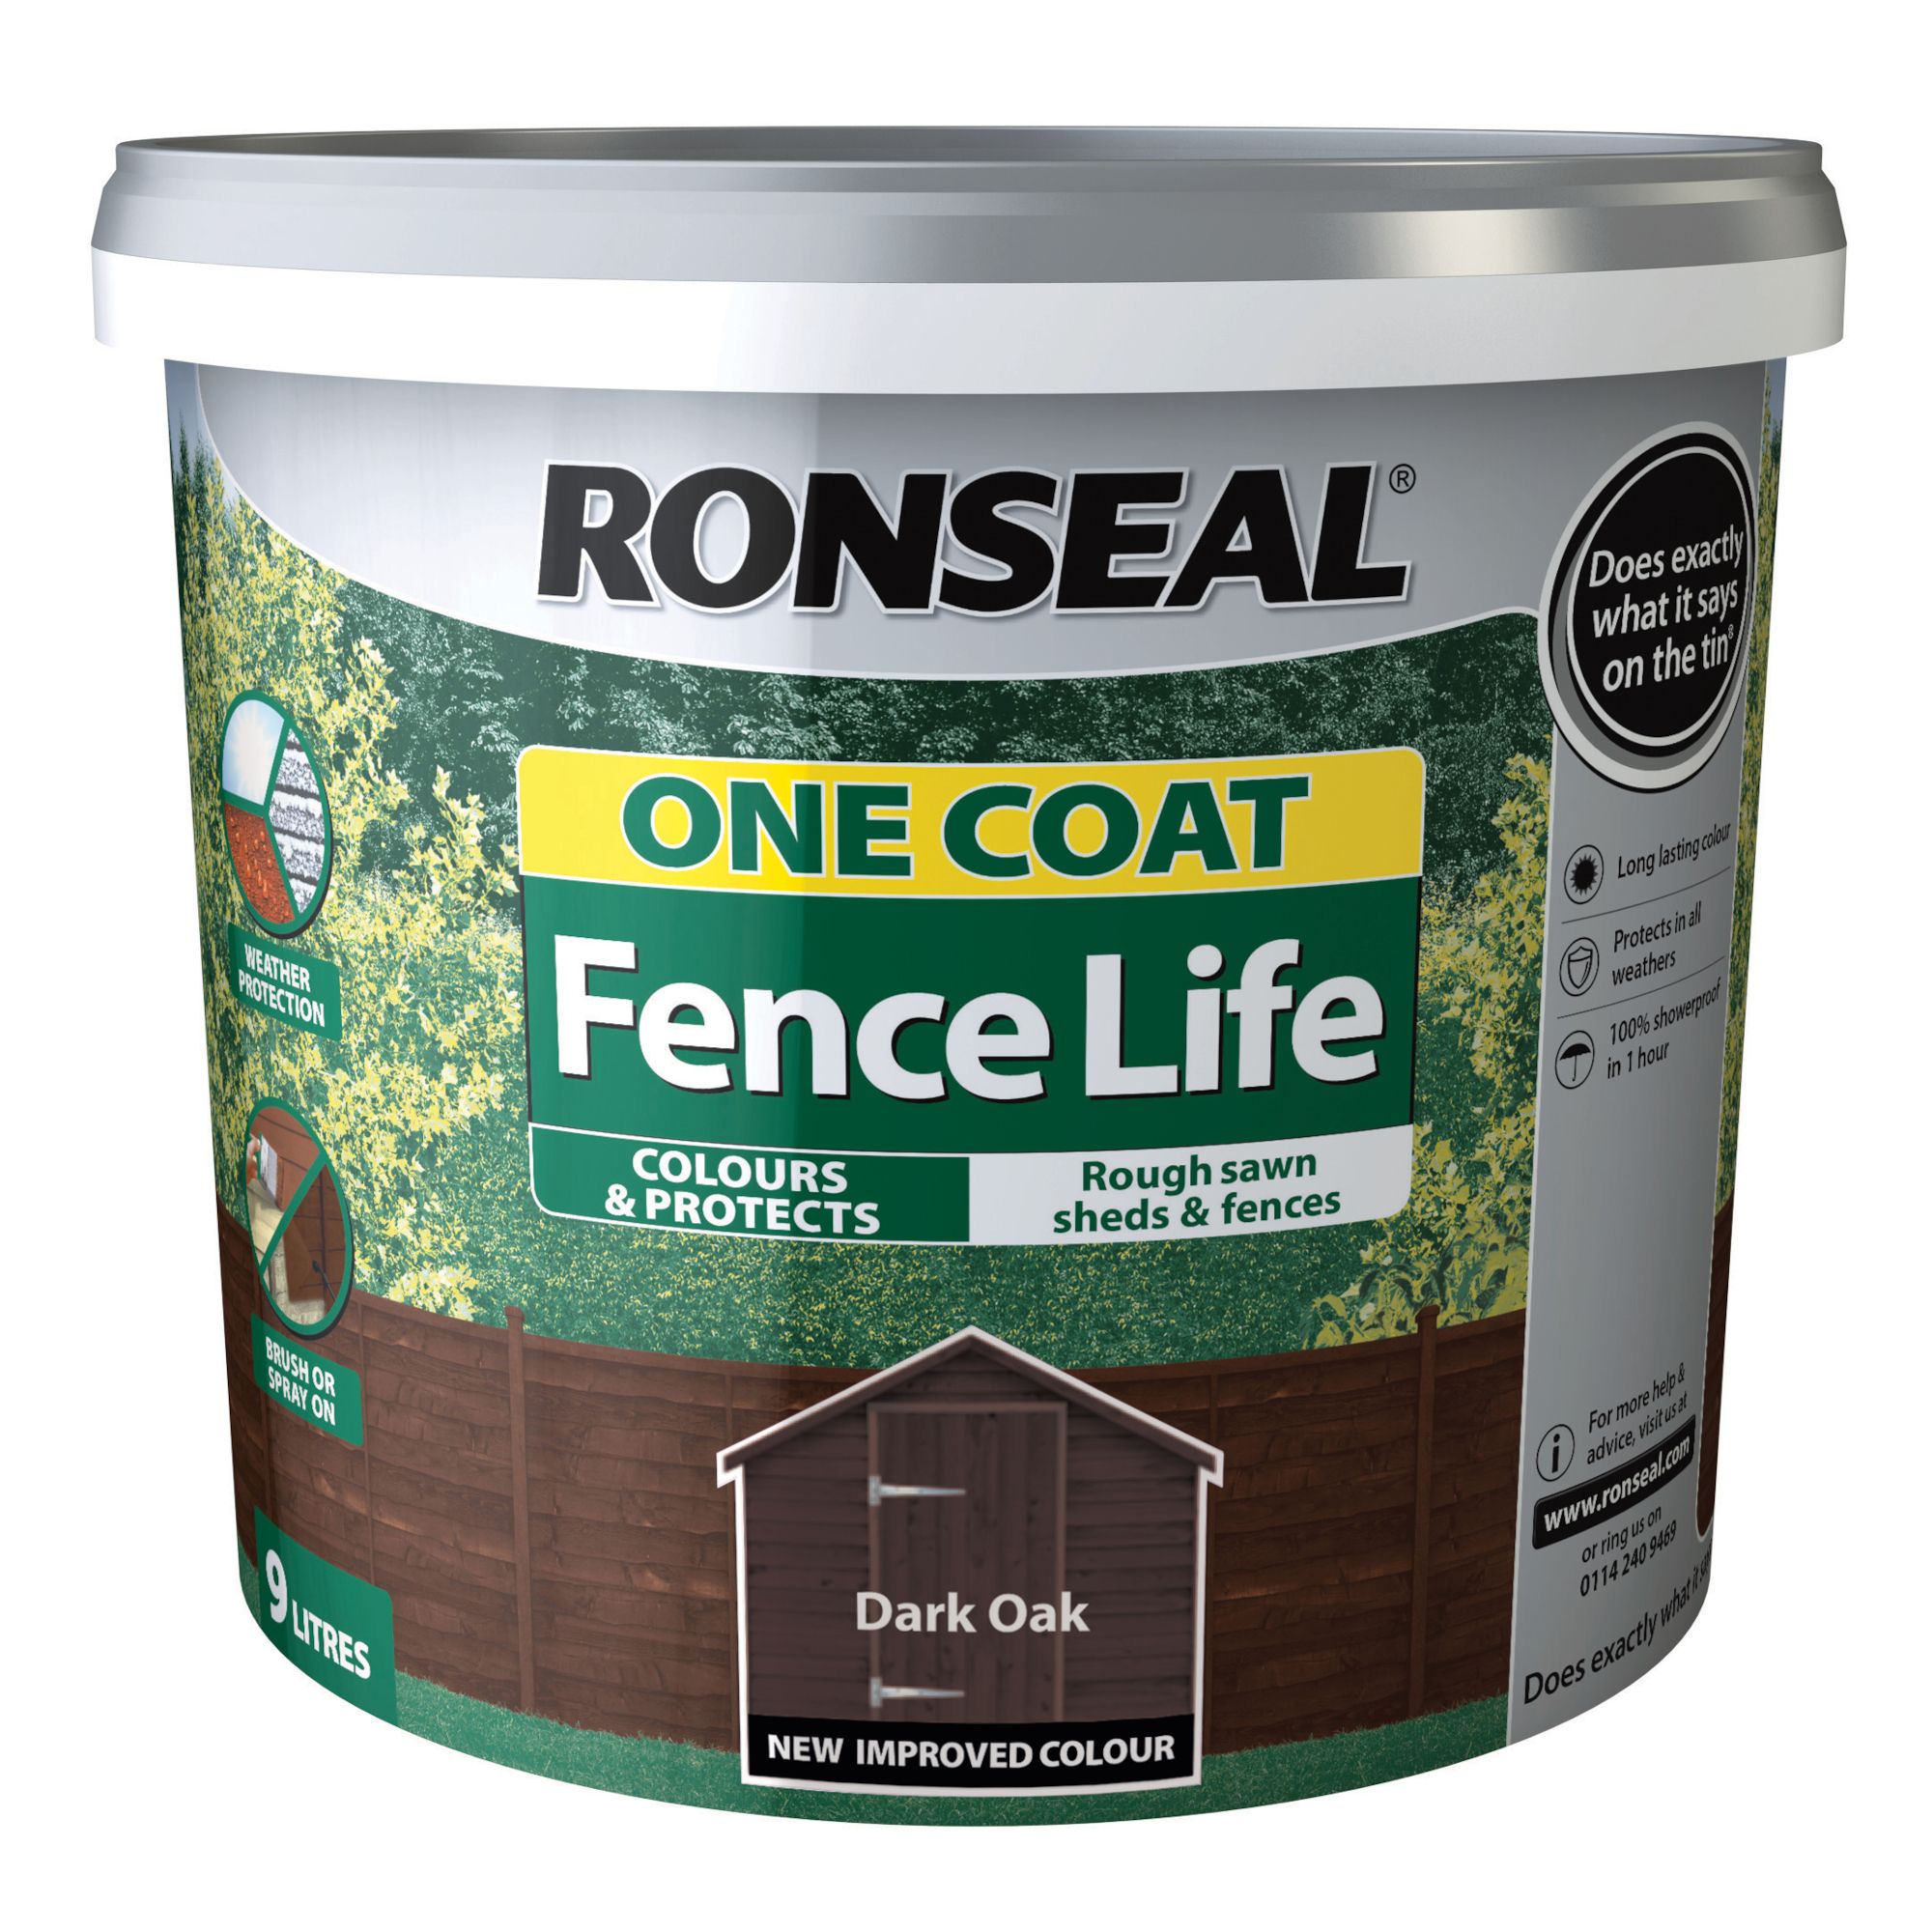 Ronseal One Coat Fence Life Dark oak Matt Exterior Wood paint, 9L